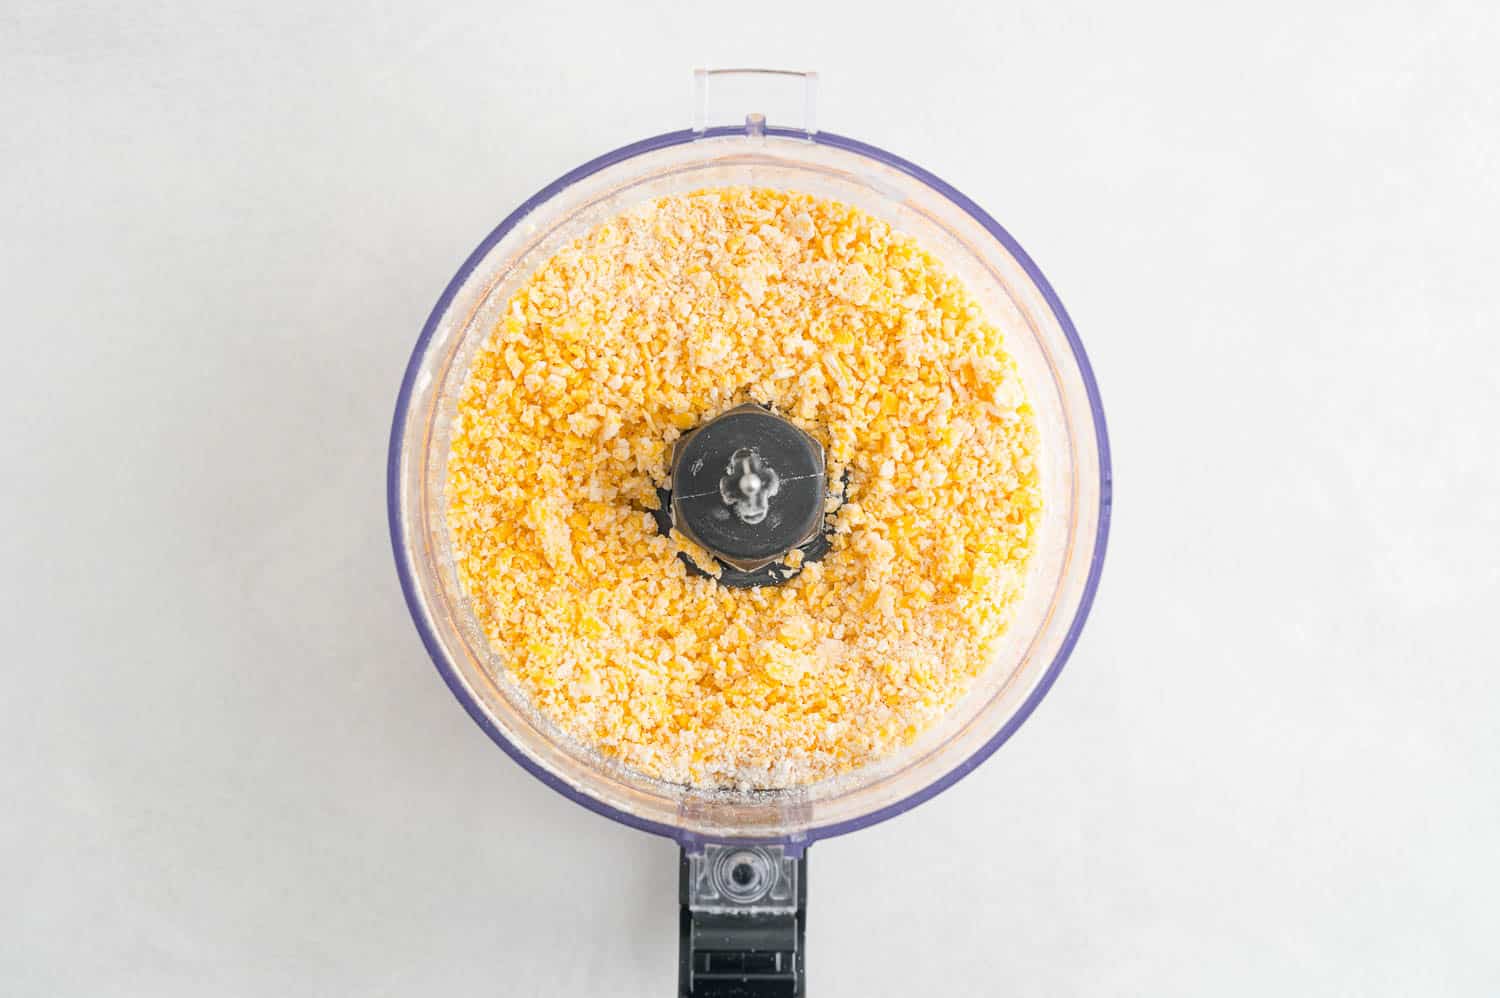 Coarse crumb mixture in a food processor.